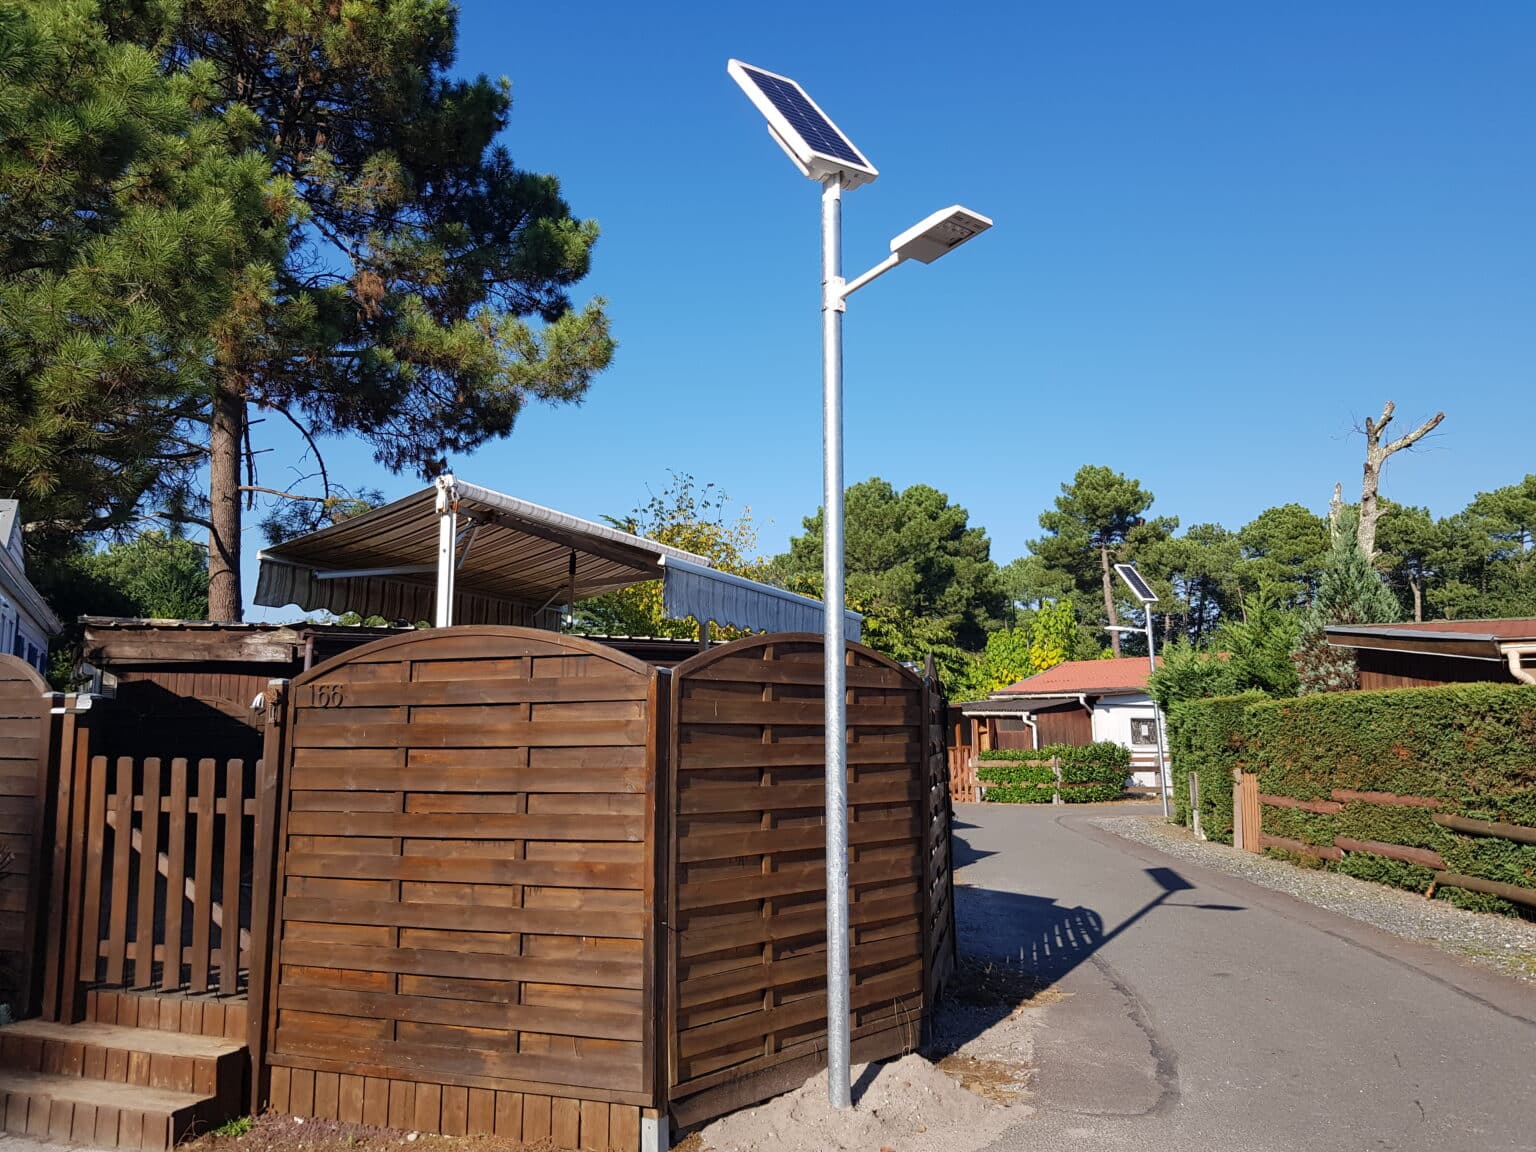 Eclairage public solaire d'un camping